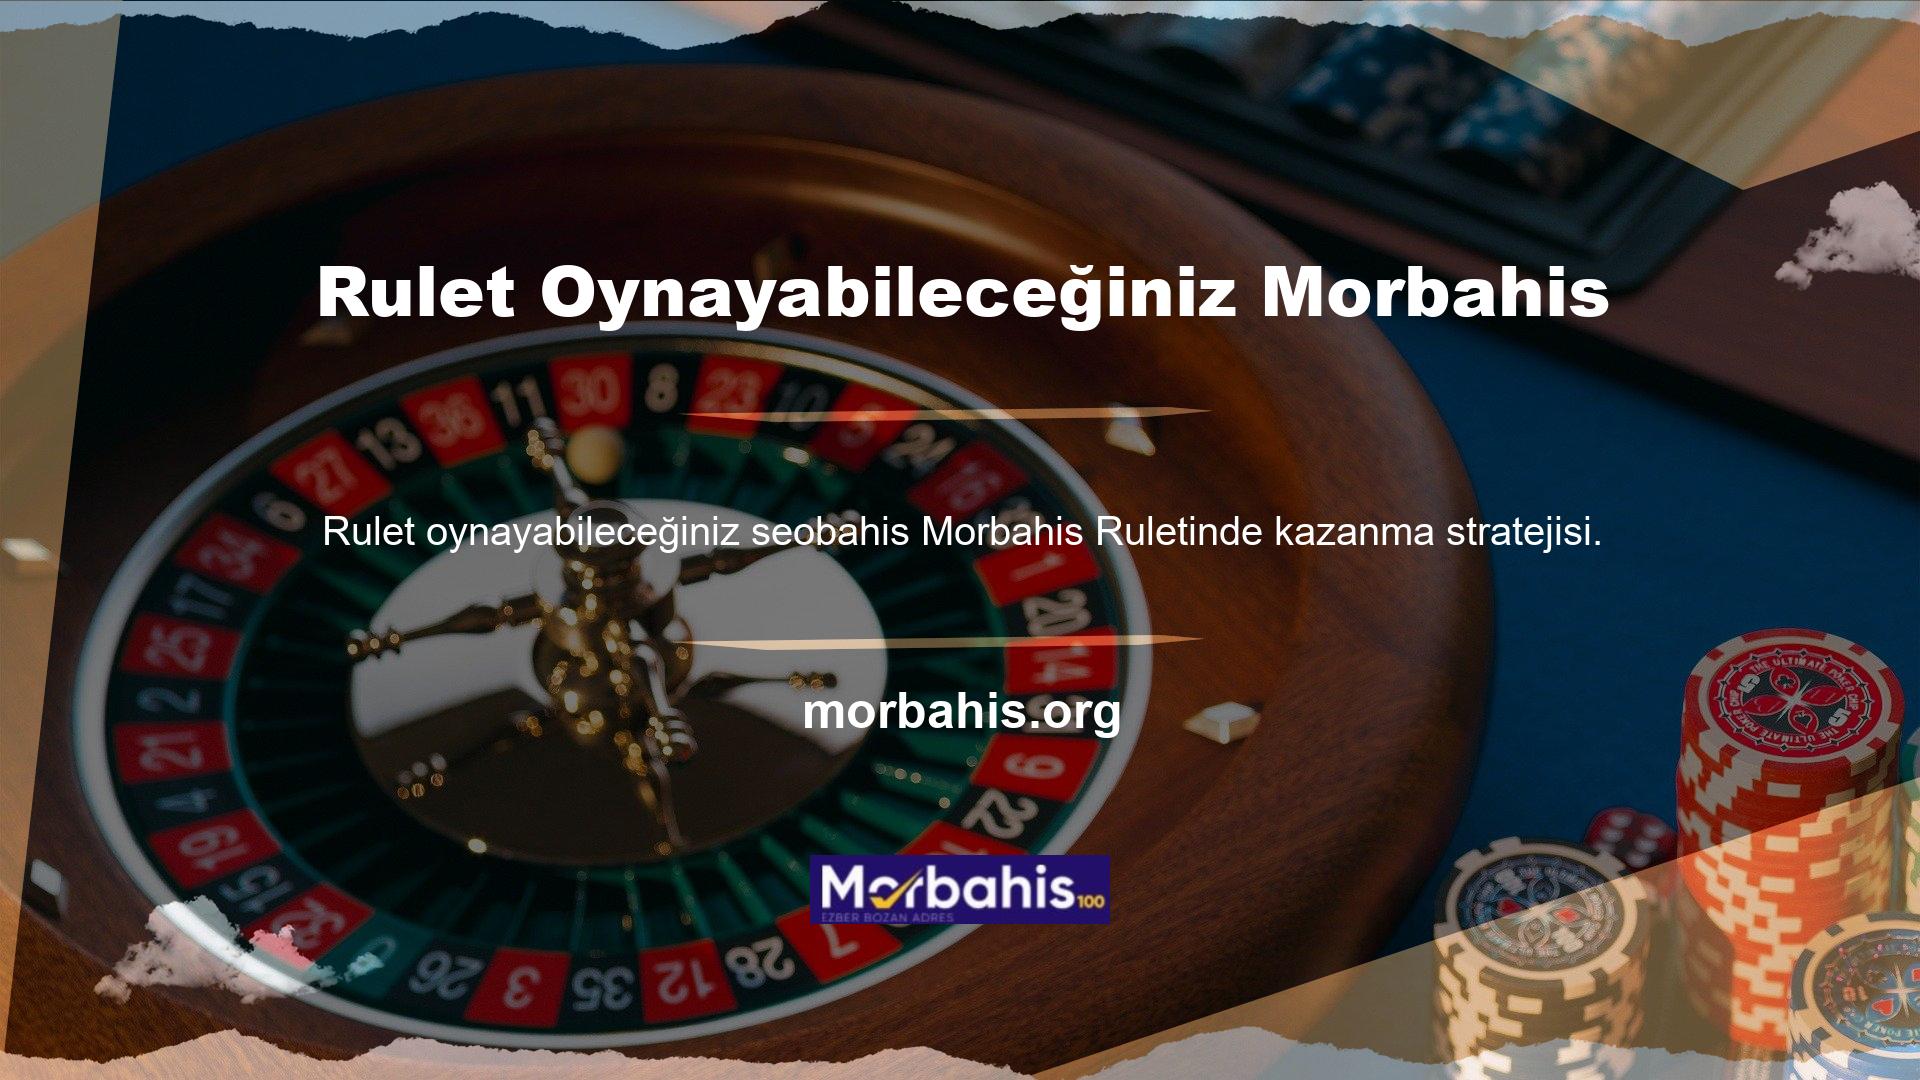 Morbahis, Türkiye'de çevrimiçi casino platformlarına izin verilmediğinden giriş adresini sık sık güncellemekte ve kullanıcıları etkilemek amacıyla yeni bilgiler paylaşmak için sosyal ağları da kullanmaktadır